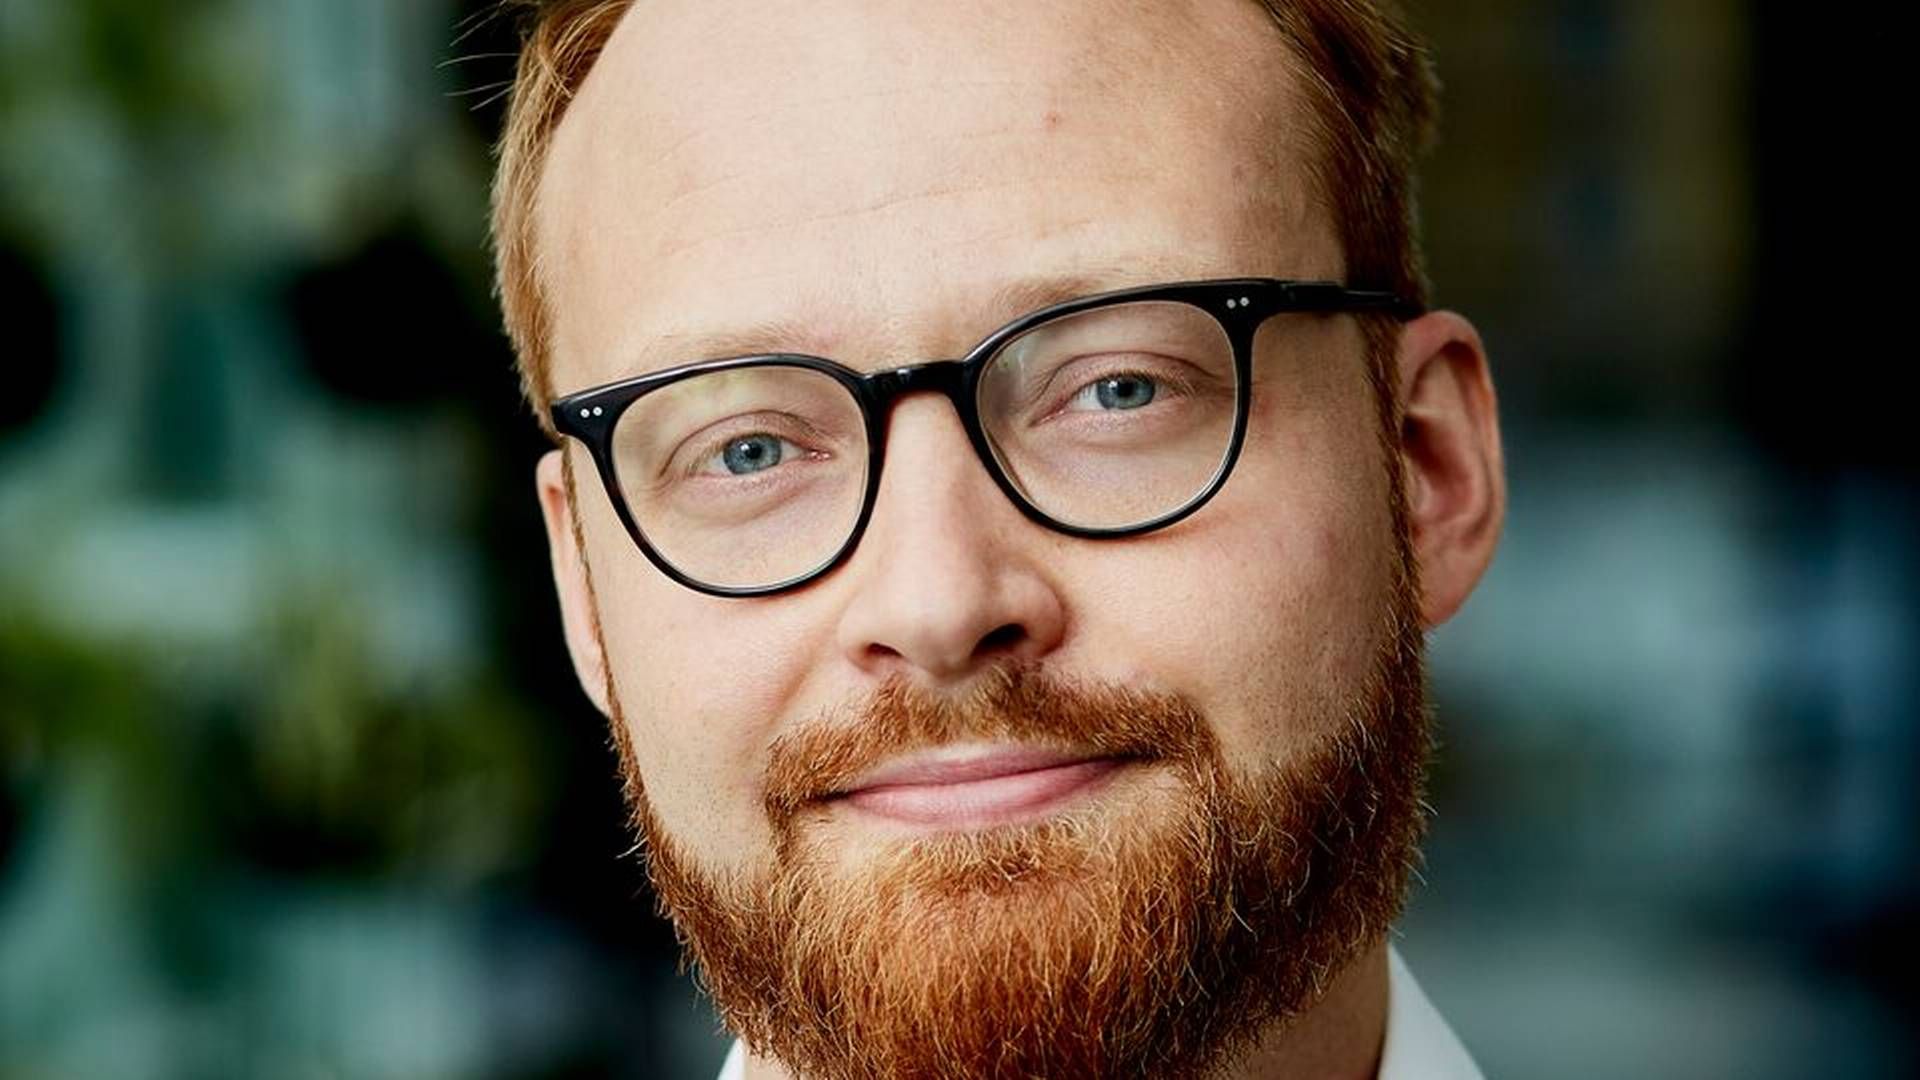 Asbjørn Lindsø skal nu være kommunikations- og pressechef hos SMVdanmark efter at være stoppet hos Sundhedsstyrelsen i december. | Foto: PR